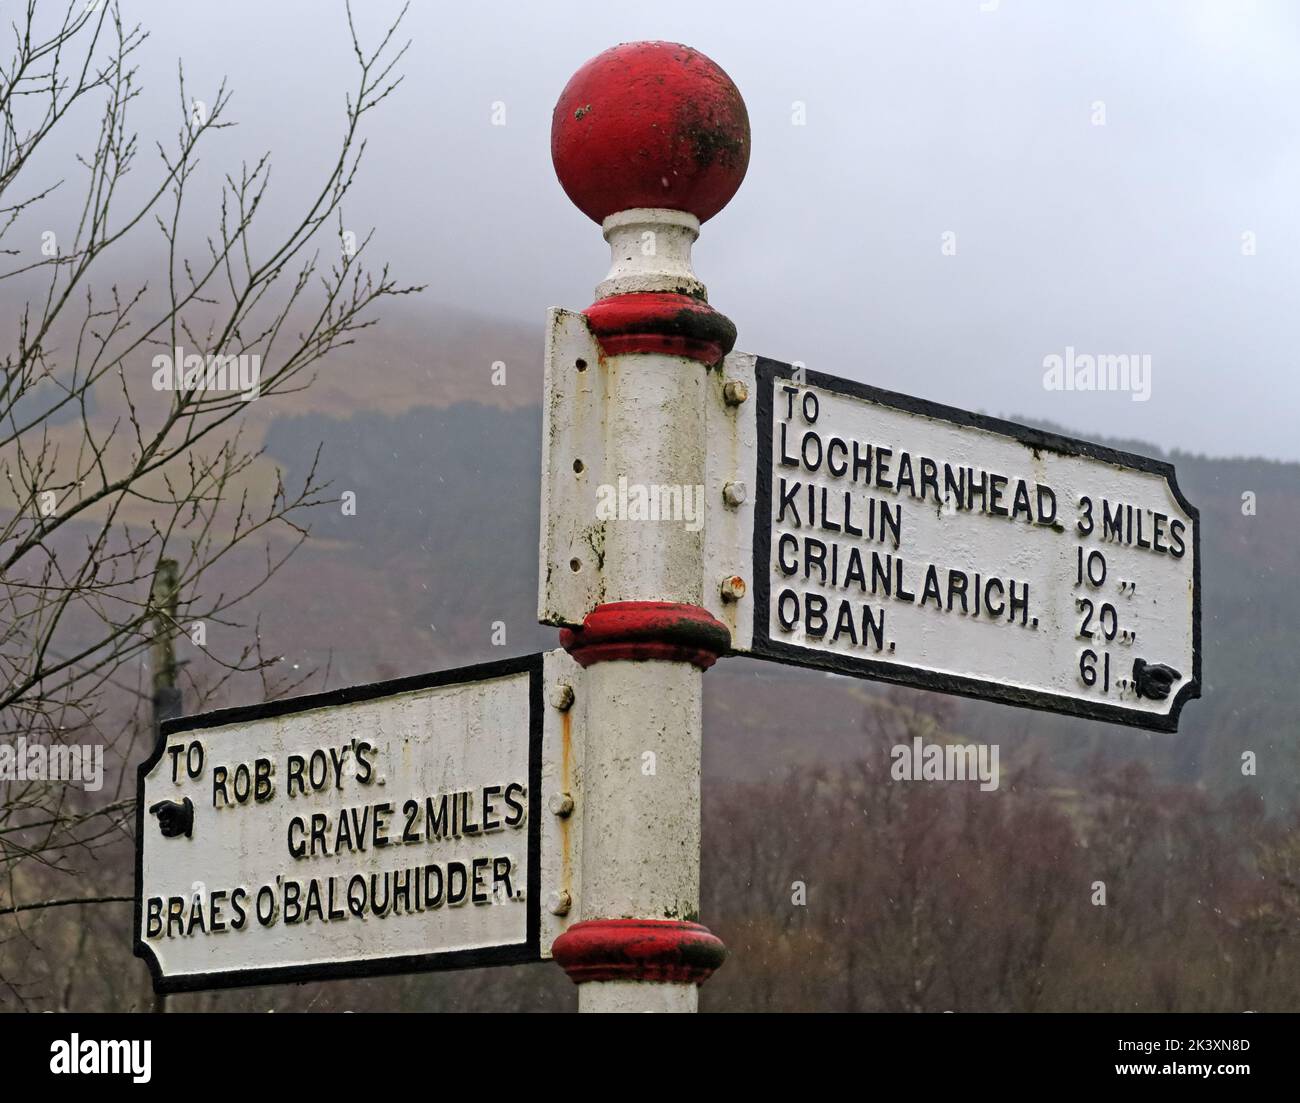 Neblig schottisches Straßenschild, Fingerpost, zum Grab von Rob Roys, Balquhidder, Lochearnhead, Schottland, Vereinigtes Königreich, FK19 8PA, nach Oban, Killin und lochearnhead Stockfoto